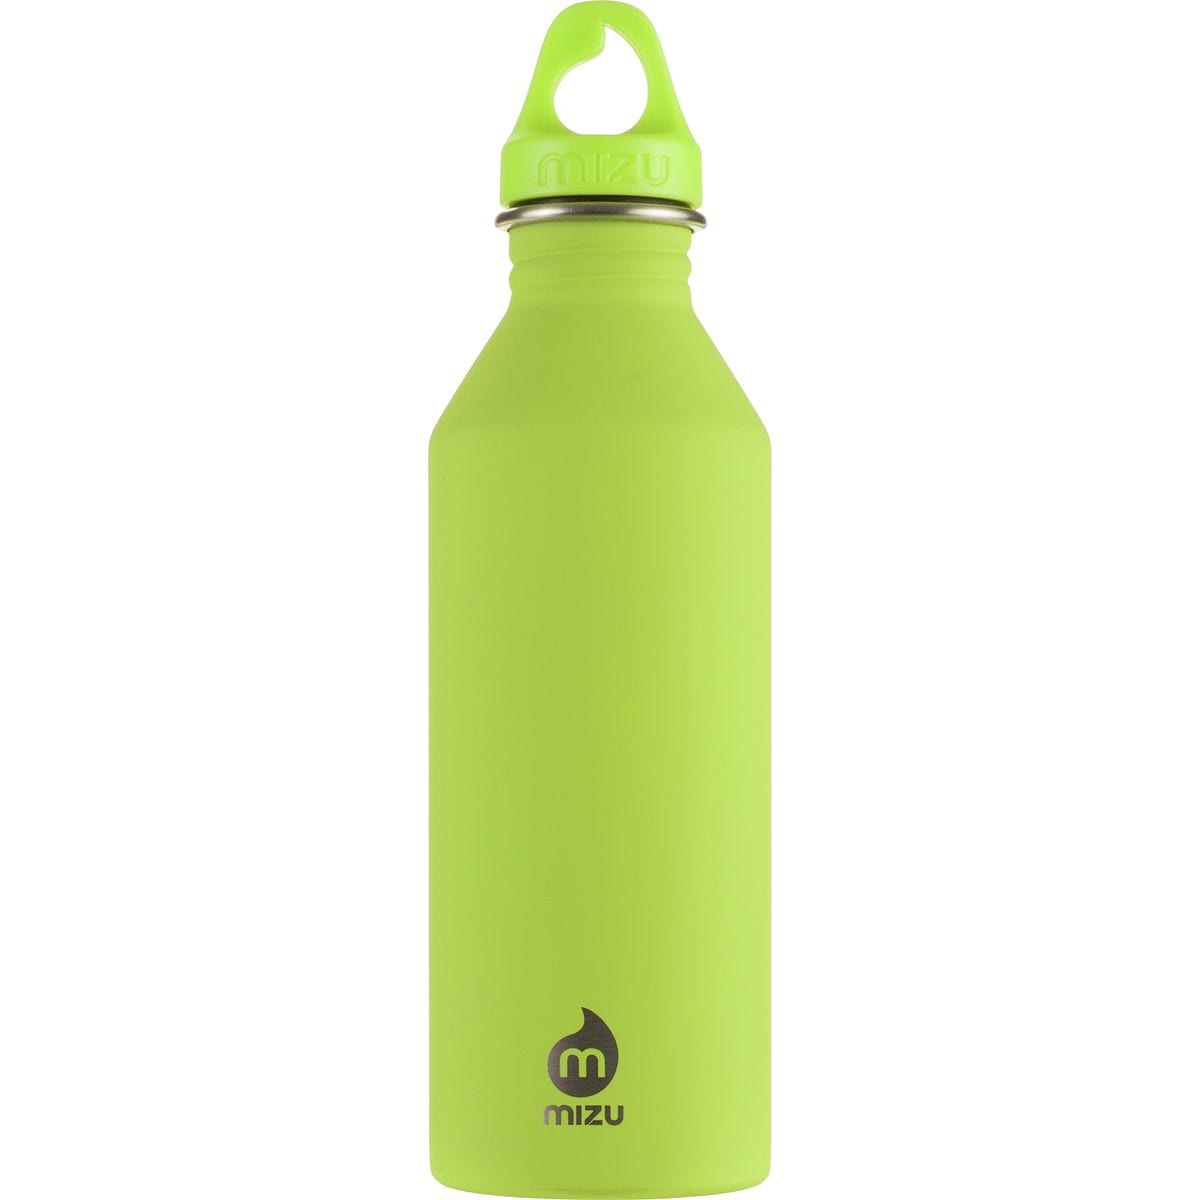 MIZU M8 Water Bottle